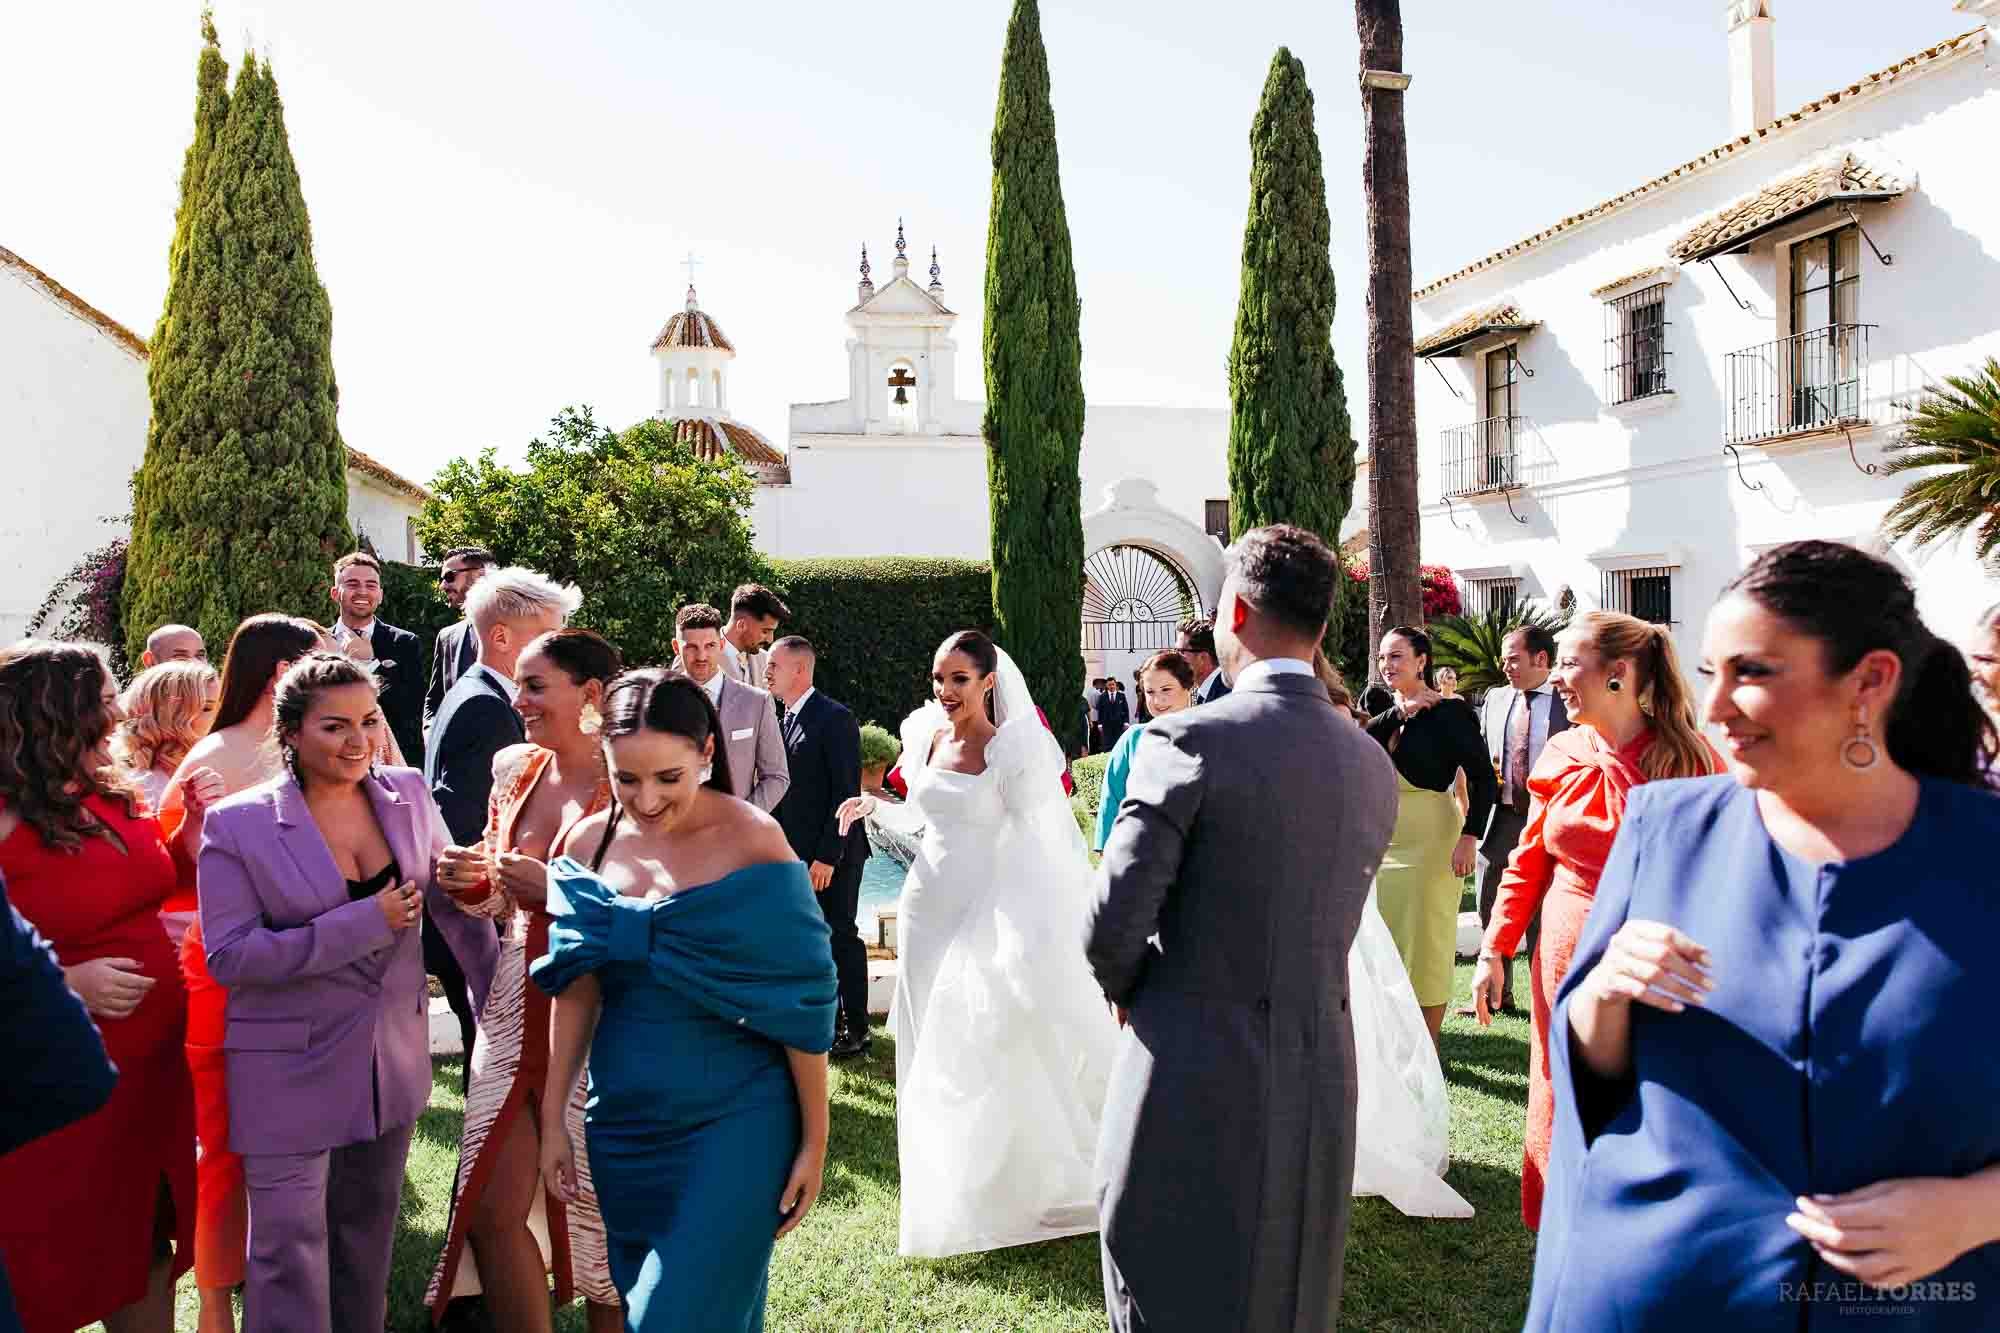 boda-hacienda-los-miradores-decoracion-catering-fotografia-fotografo-rafael-torres-photo-54.jpg